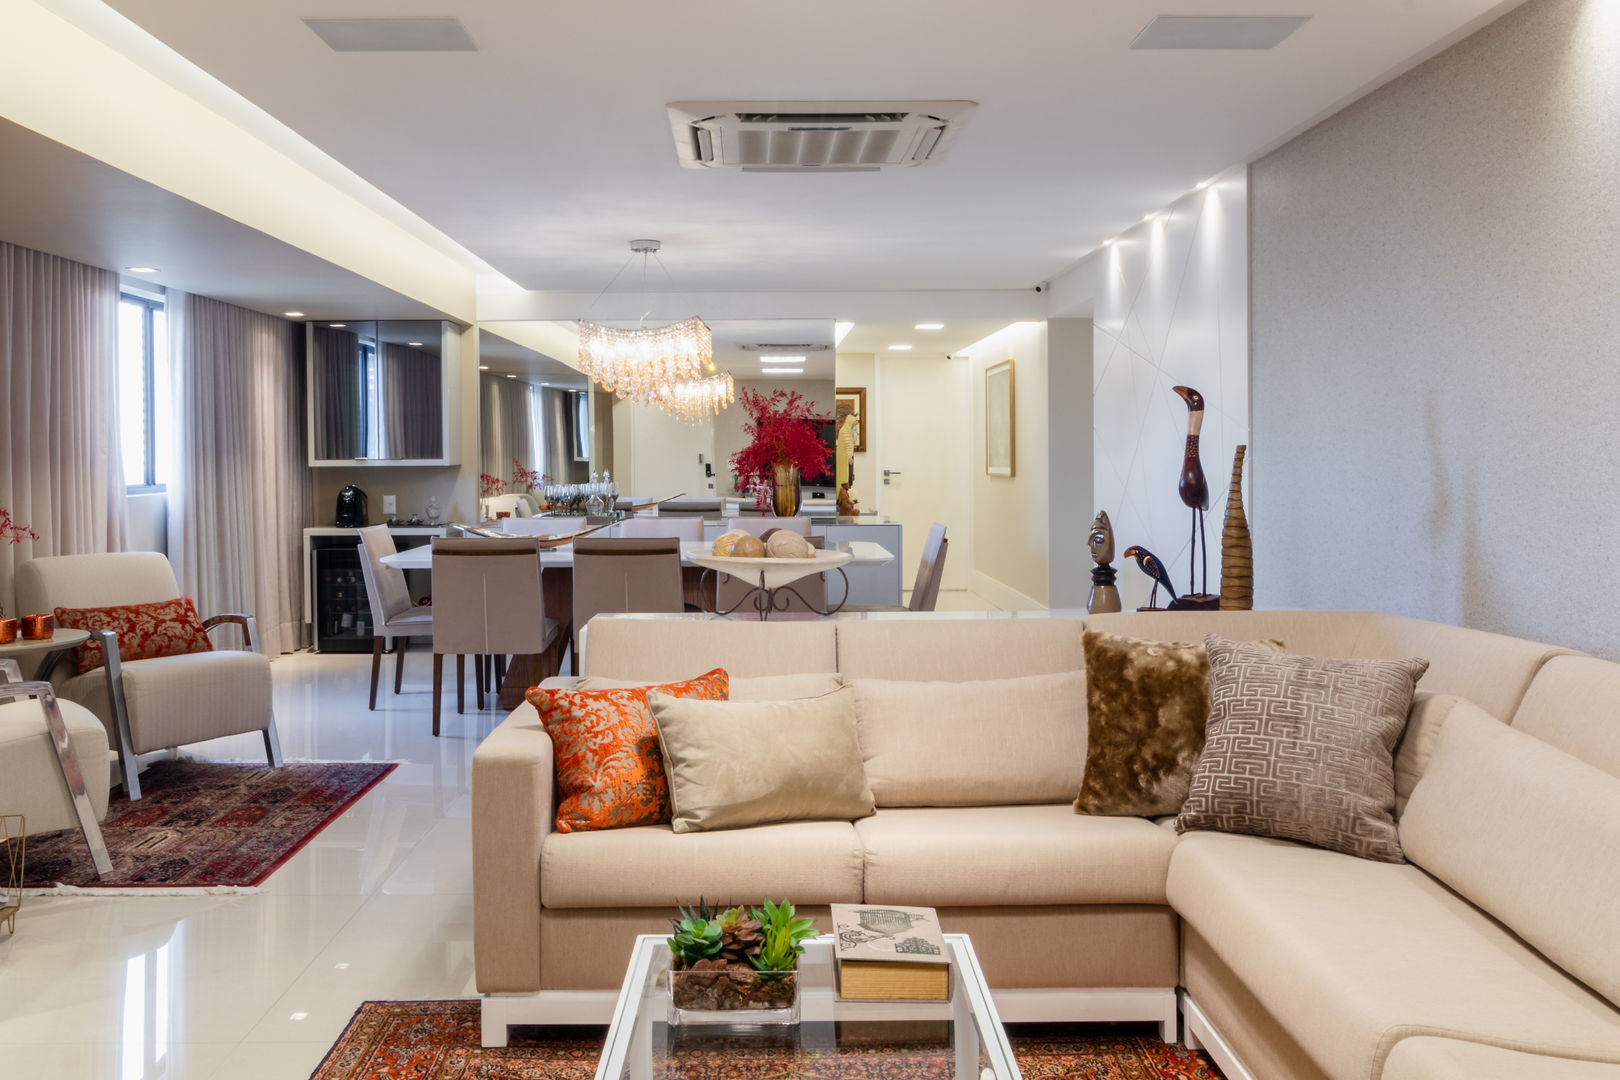 Reforma em Apartamento com toque classico e moderno, em tons claros, Arquitetura Sônia Beltrão & associados Arquitetura Sônia Beltrão & associados Salones modernos